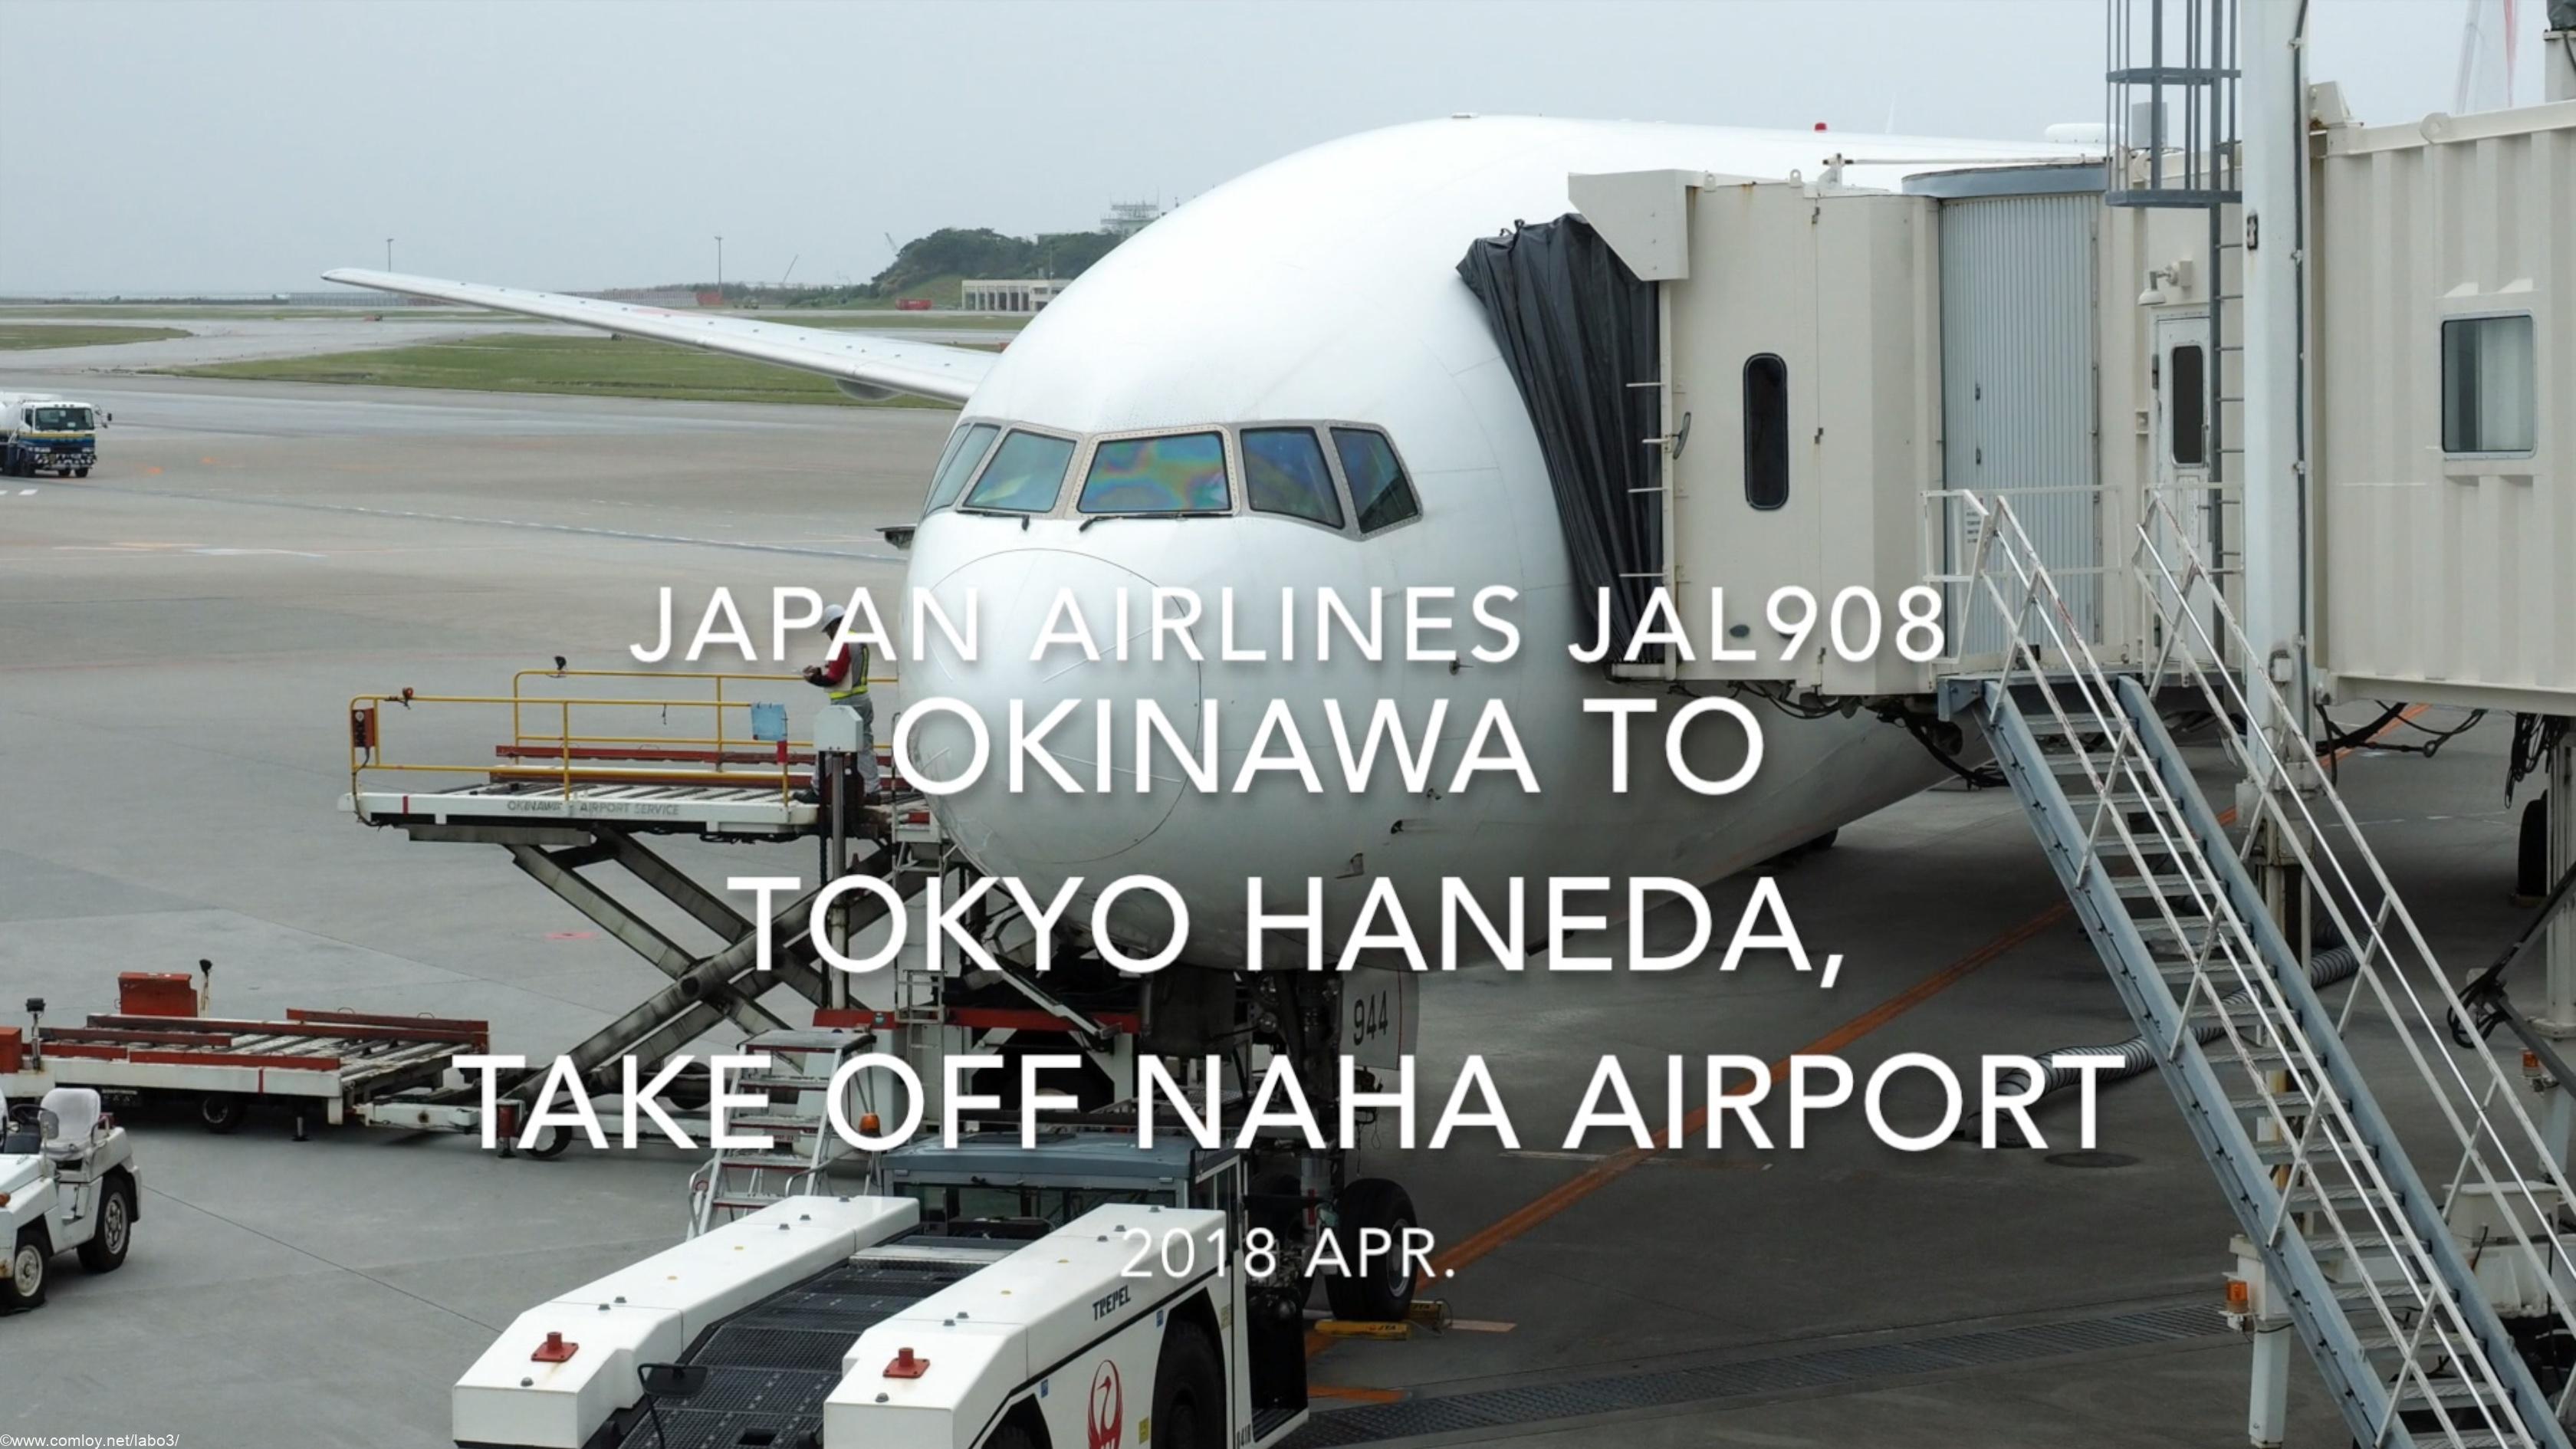 【機内から離着陸映像】2018 Apr JAL JAL908 OKINAWA to TOKYO HANEDA, Take off NAHA airport